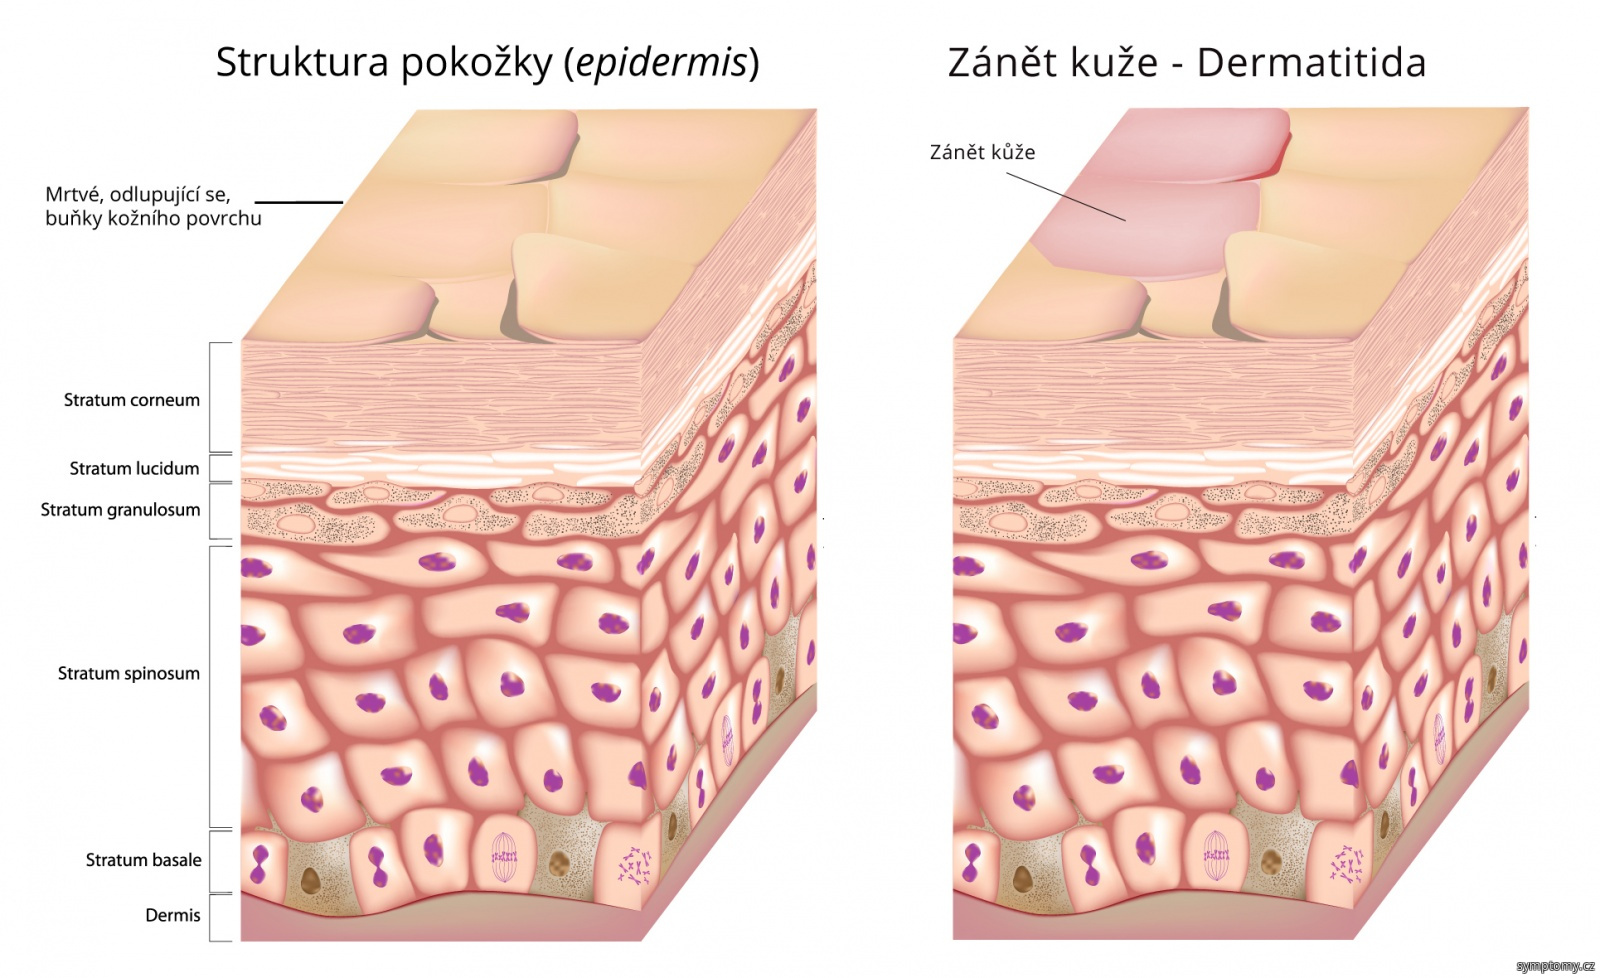 Dermatitida - zánět kůže